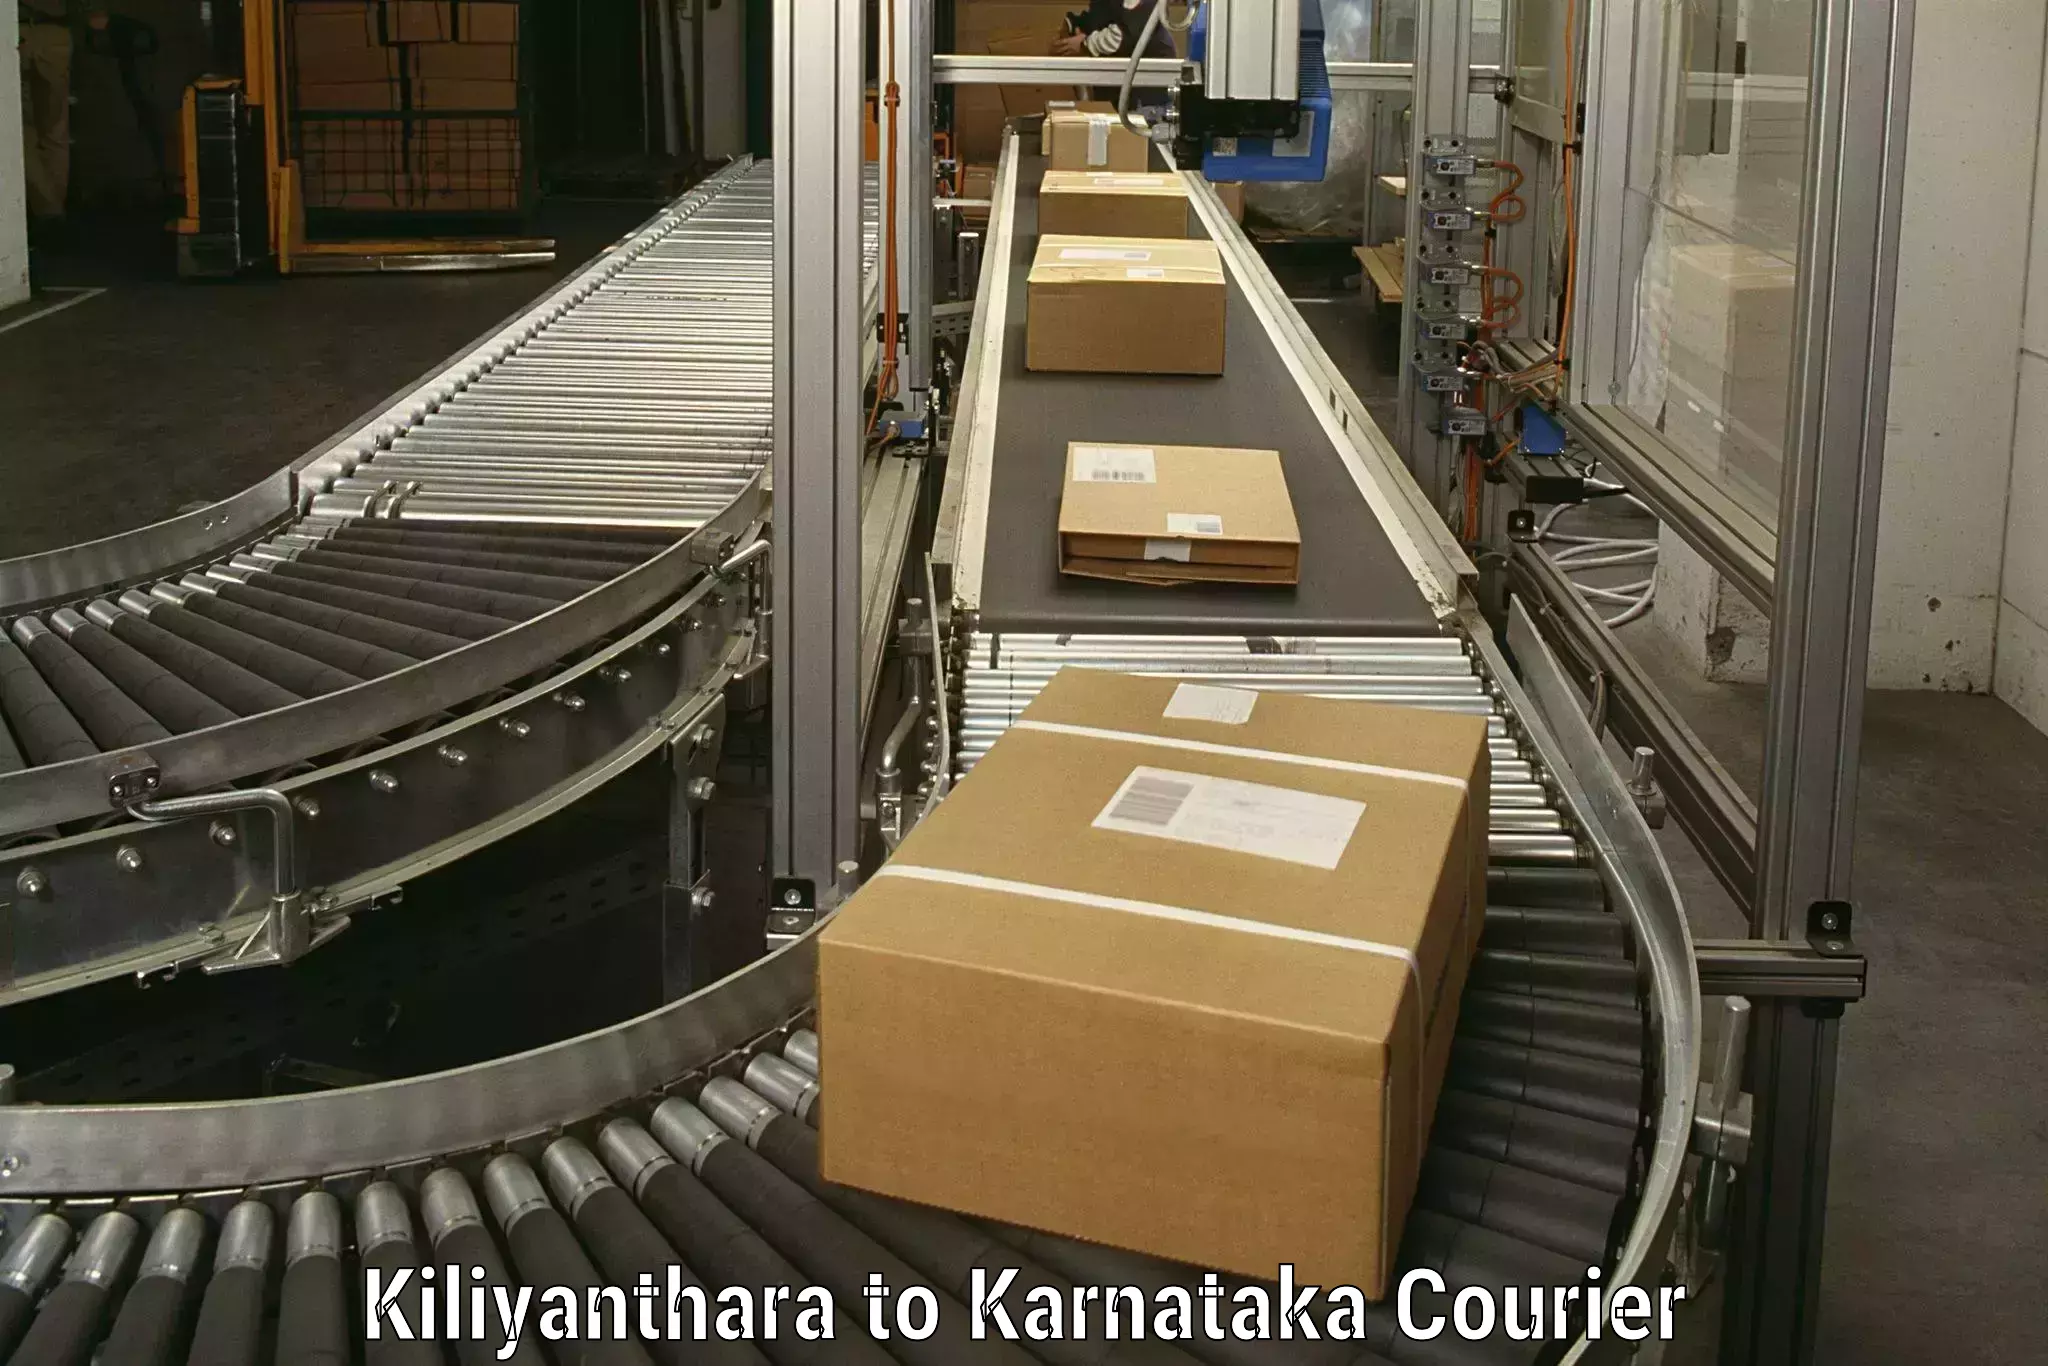 Skilled furniture transporters Kiliyanthara to Belthangady